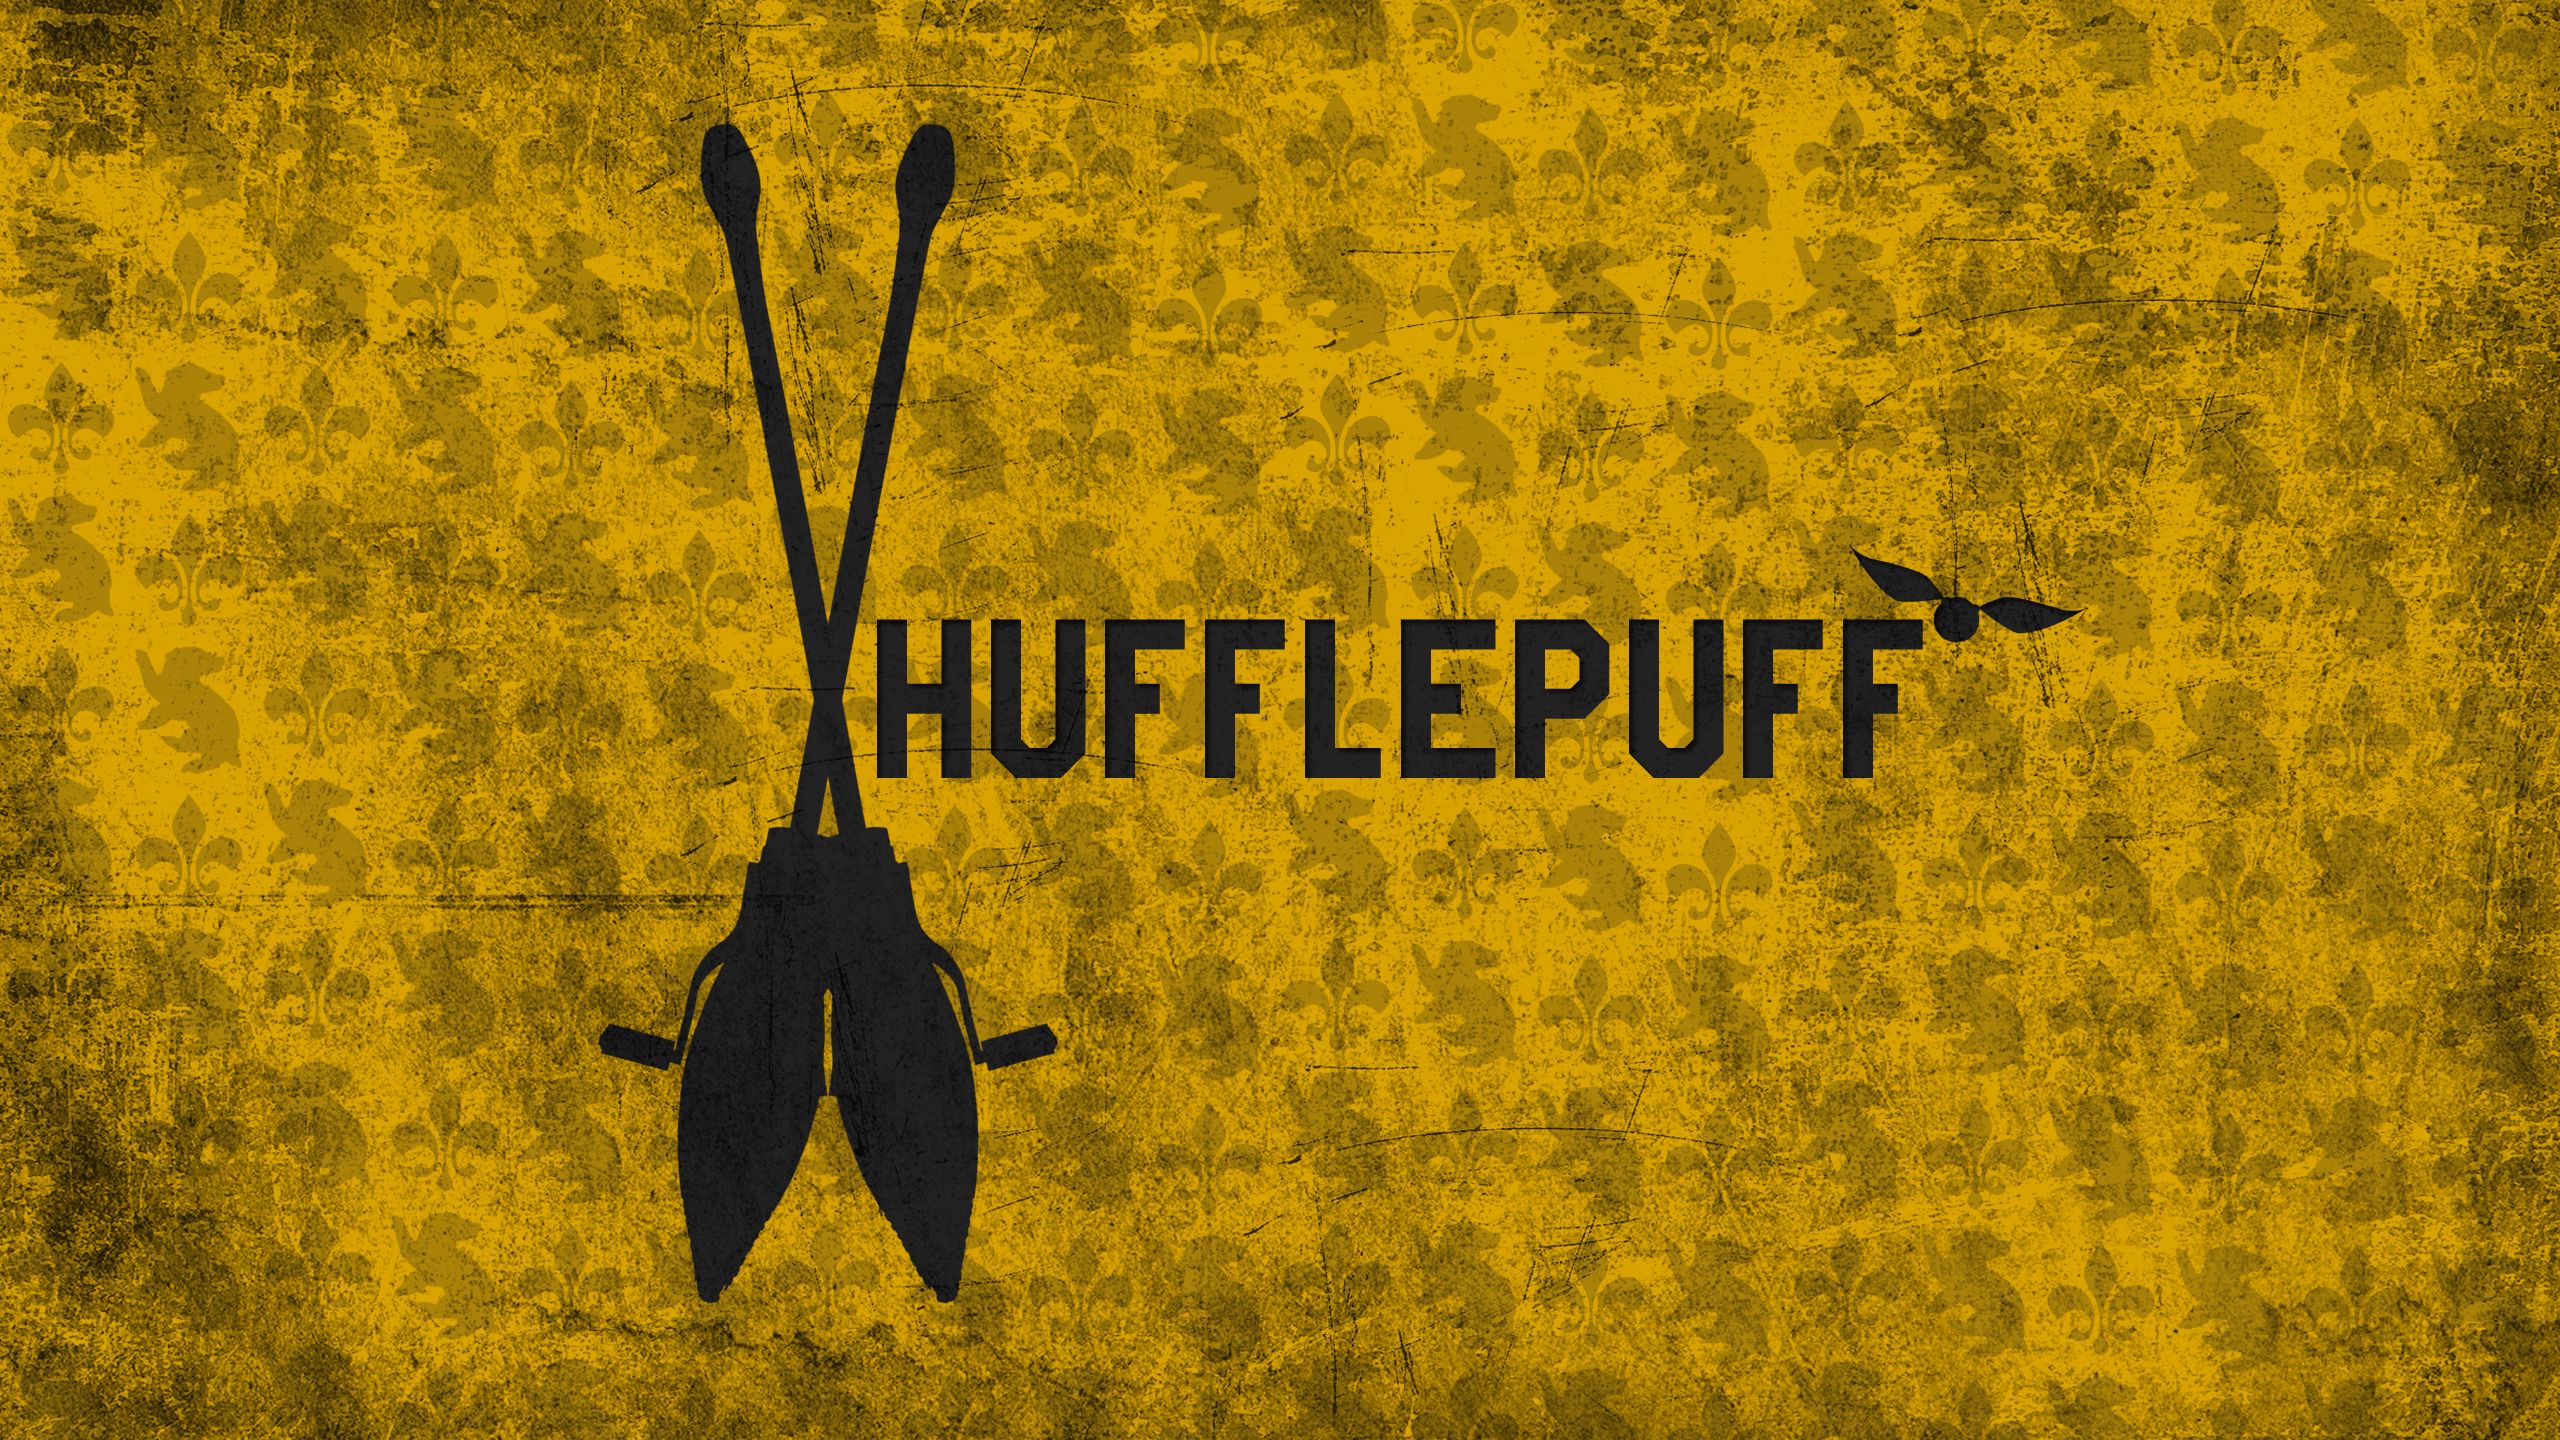 Broom Hufflepuff 2560x1440